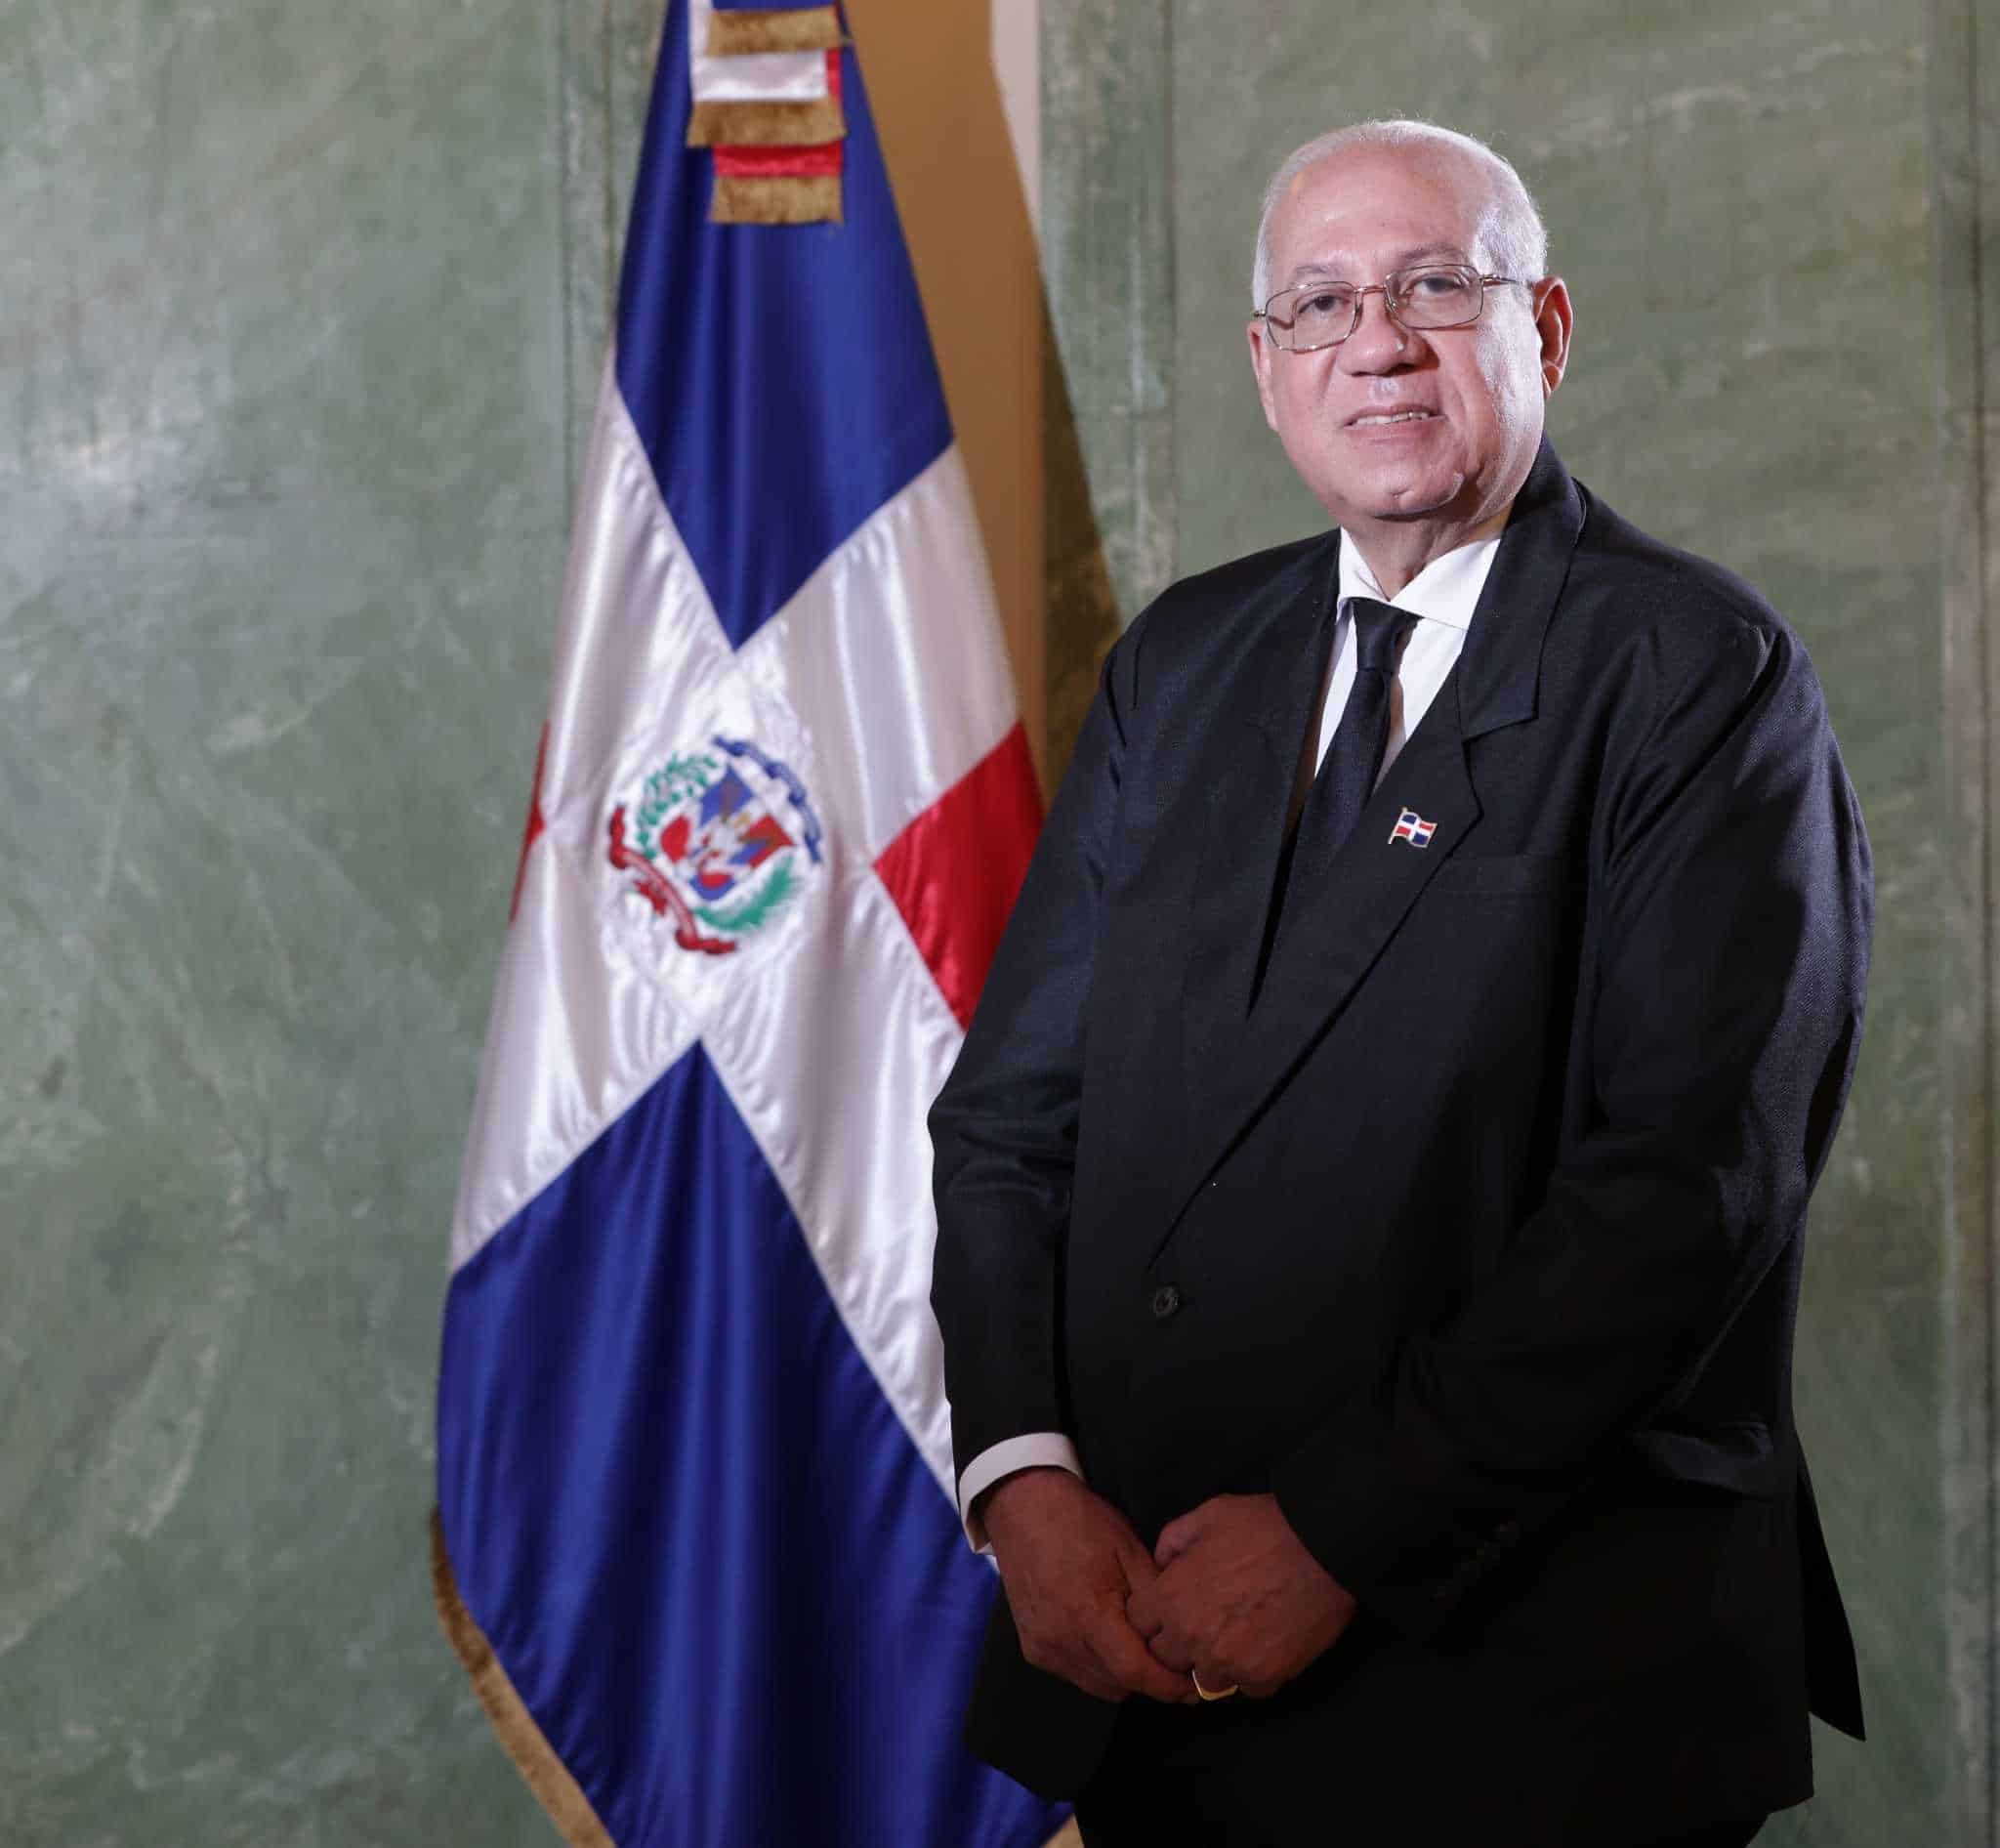 <div><strong>Fidias Aristy <br></strong></div><div><strong><br></strong></div><br><div><i>Nuevo Juez del TC </i><br></div><div><br></div><br><br><br>Ha sido asesor del Poder Ejecutivo en materia de políticas antinarcóticas. Expresidente del Consejo Nacional de Drogas. También fungió como secretario general de la Liga Municipal Dominicana en el período presidencial 2012-16.